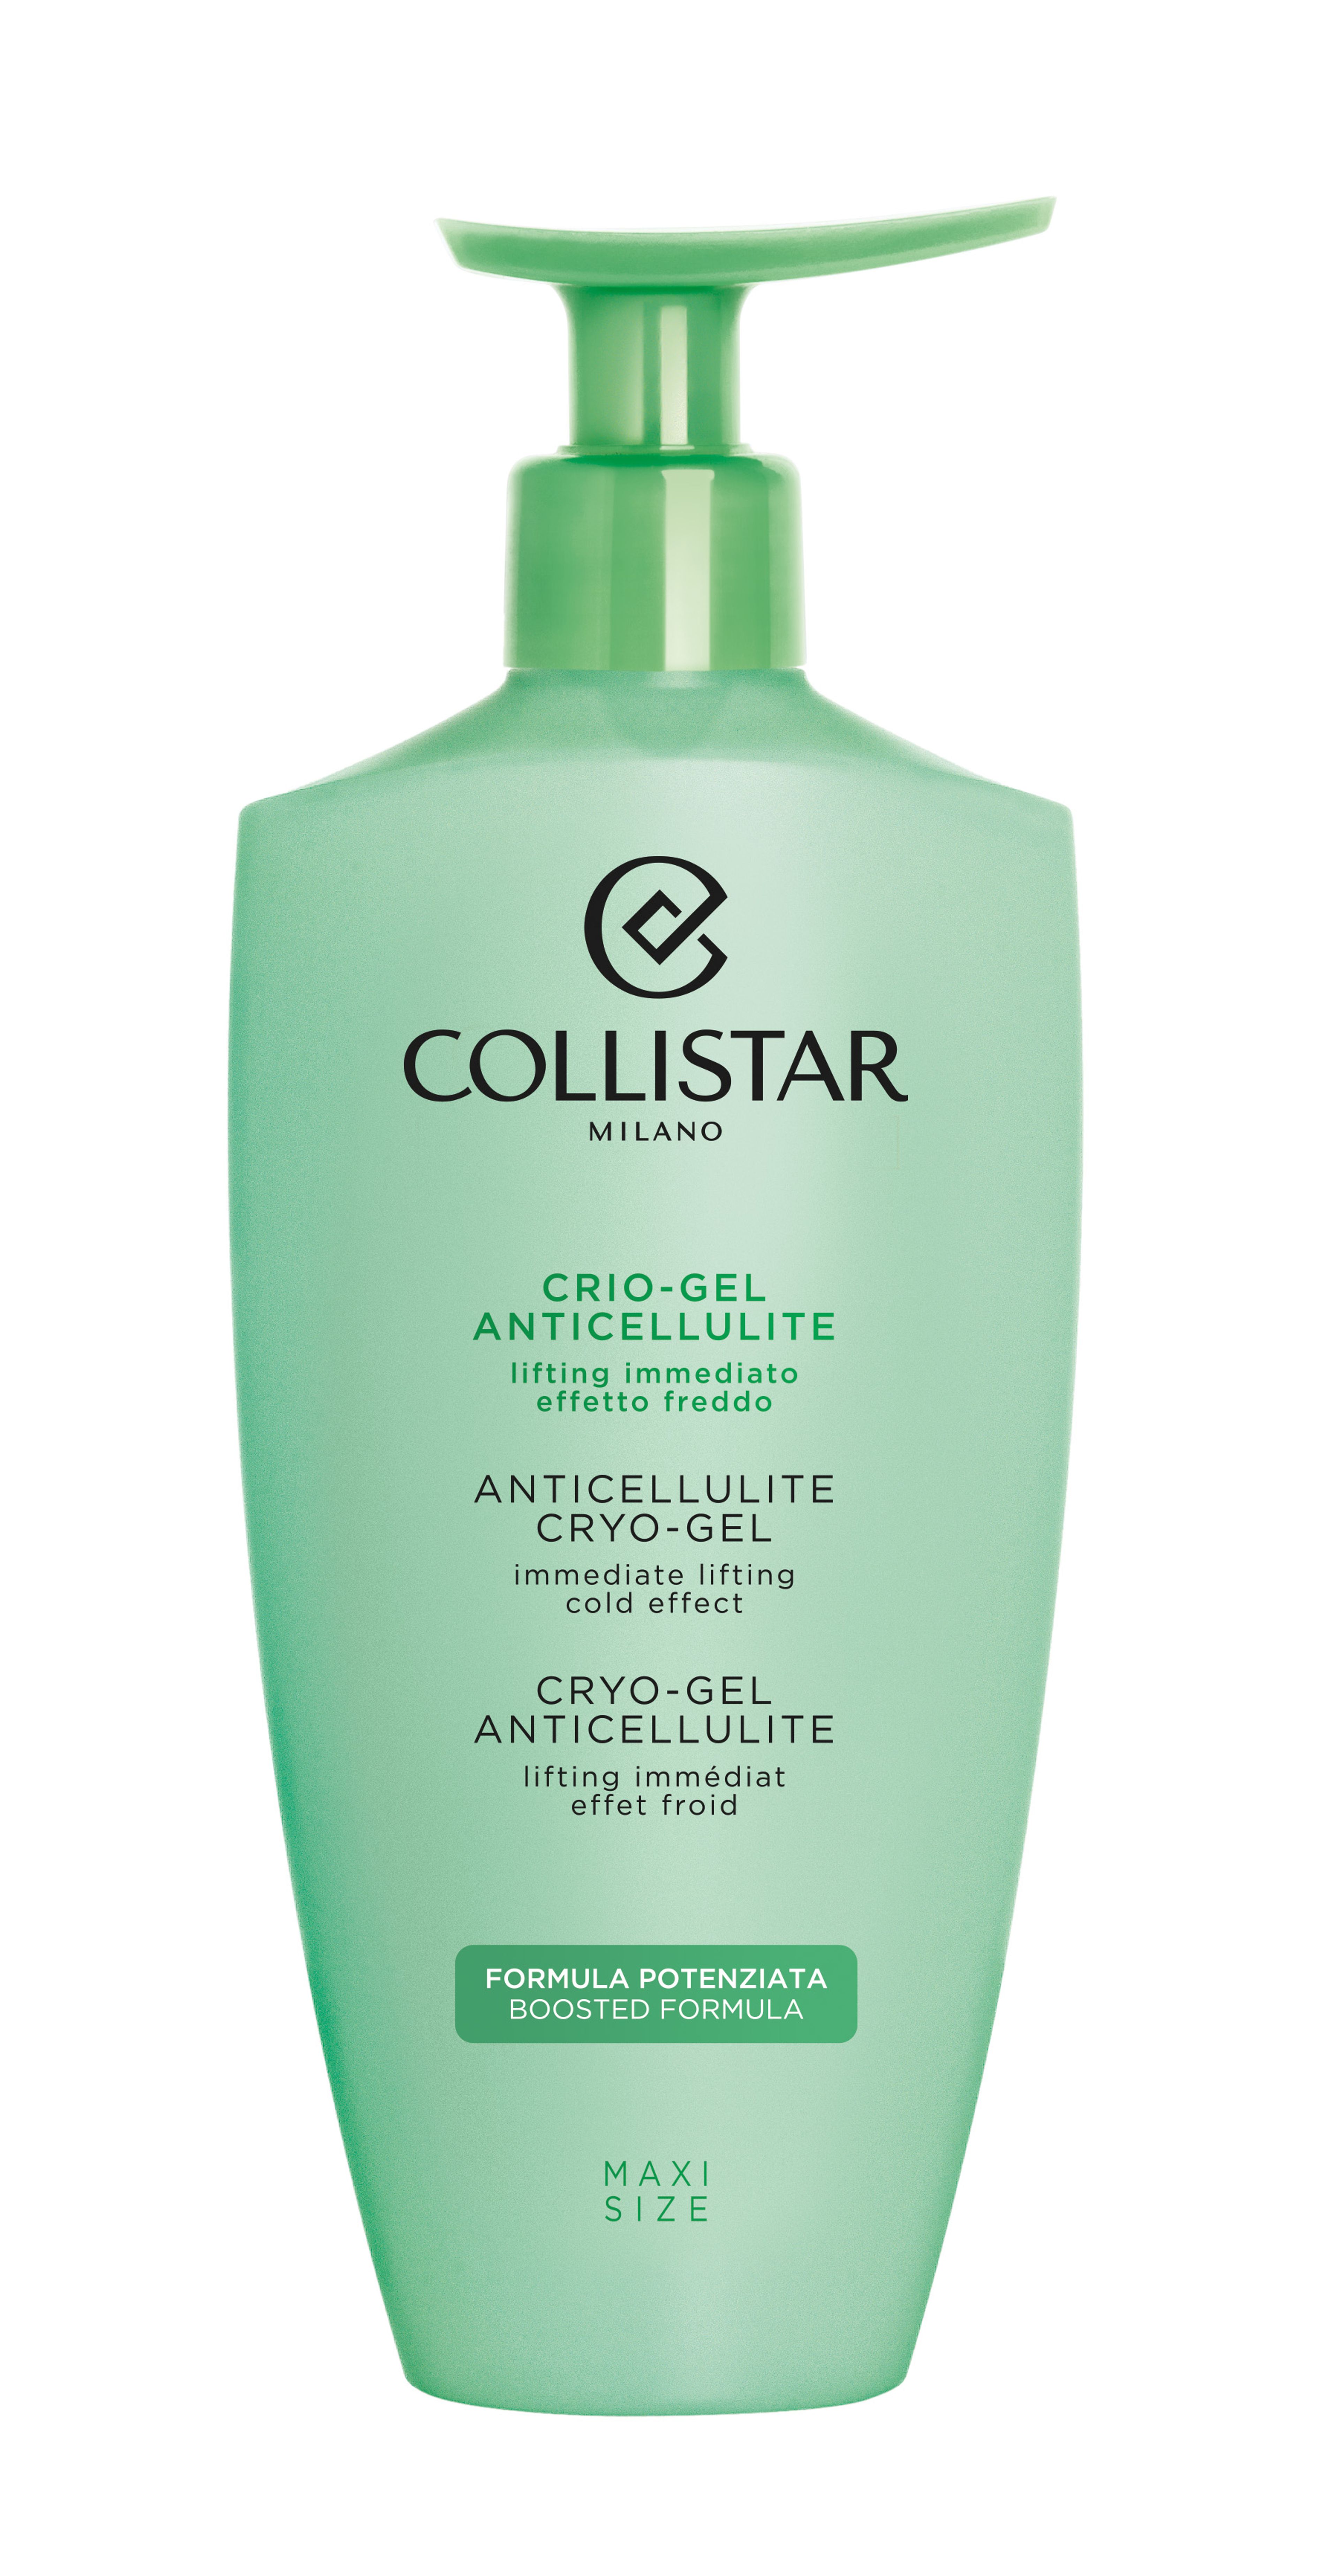 Collistar Crio-gel Anticellulite* 1